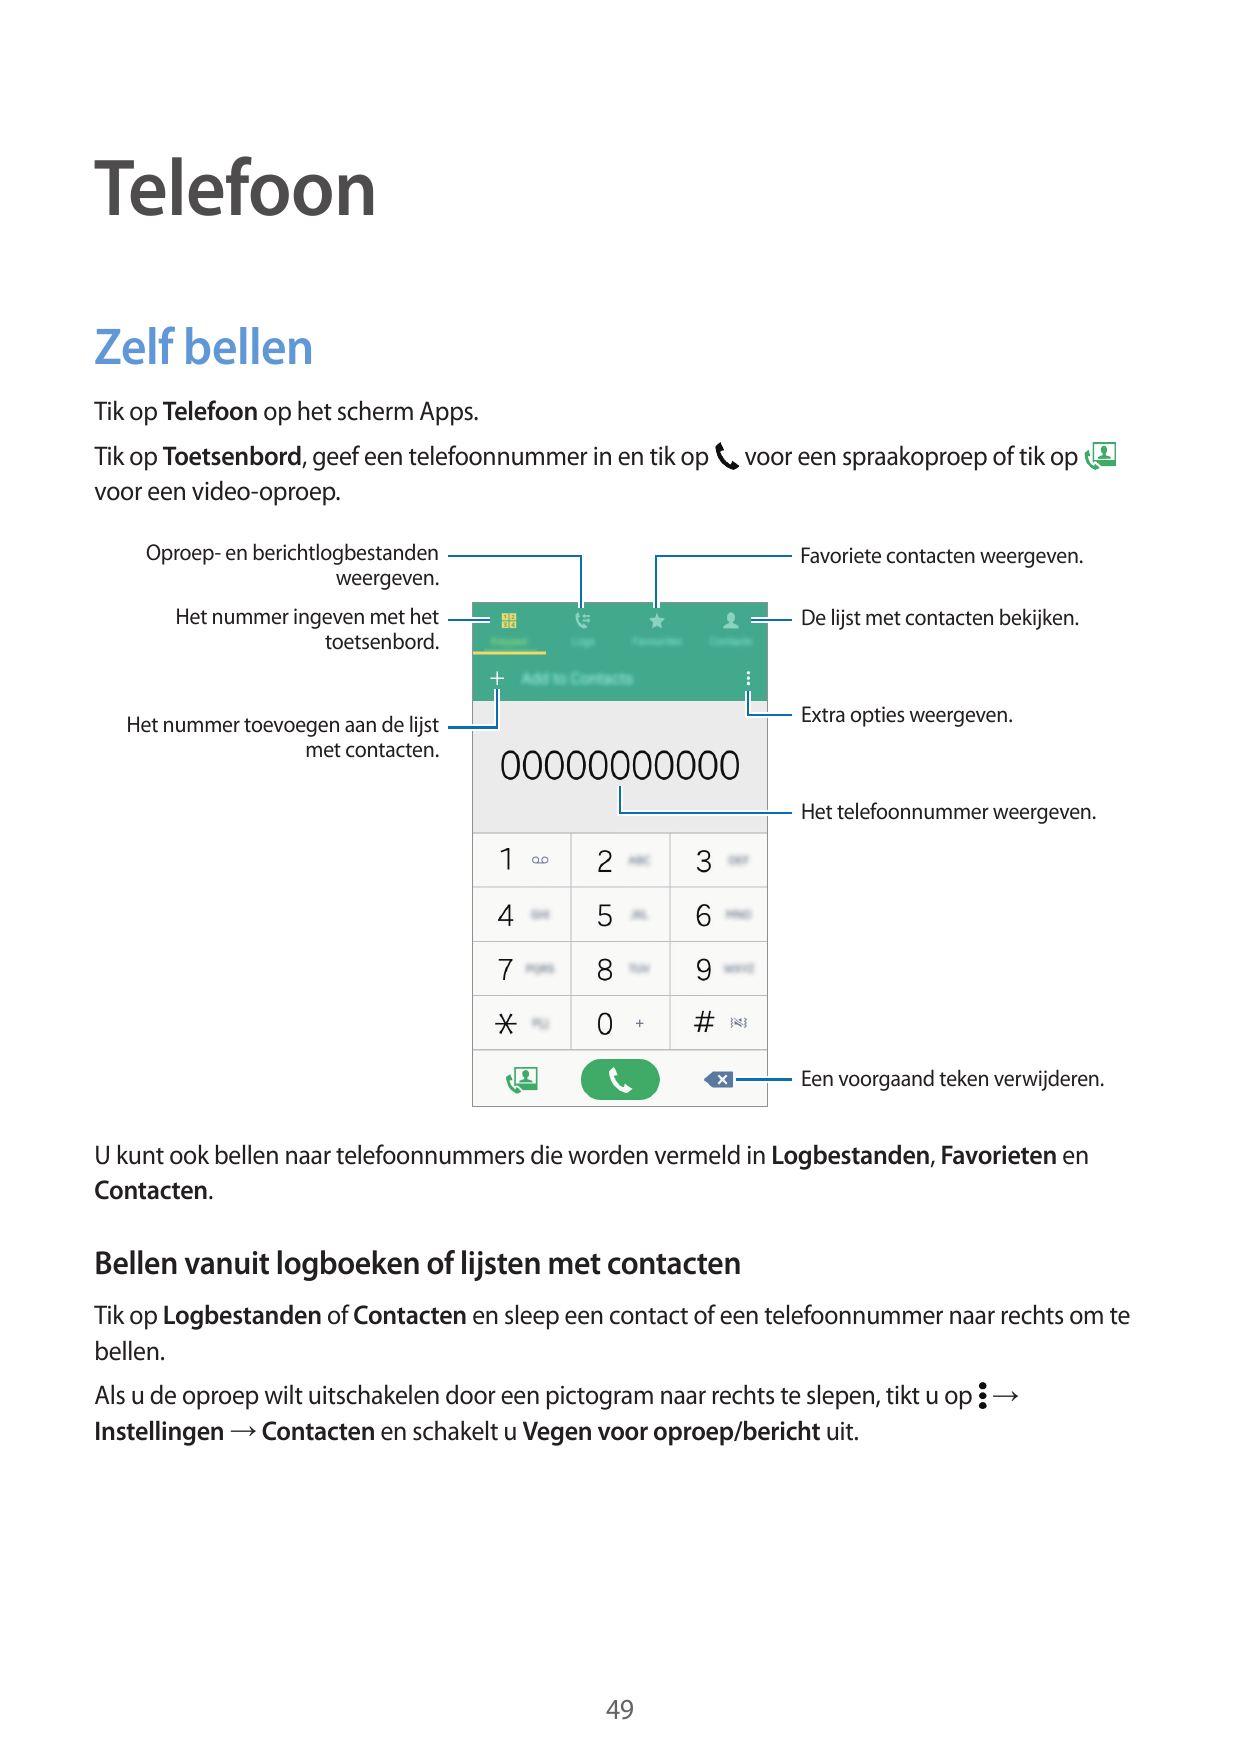 TelefoonZelf bellenTik op Telefoon op het scherm Apps.Tik op Toetsenbord, geef een telefoonnummer in en tik opvoor een video-opr